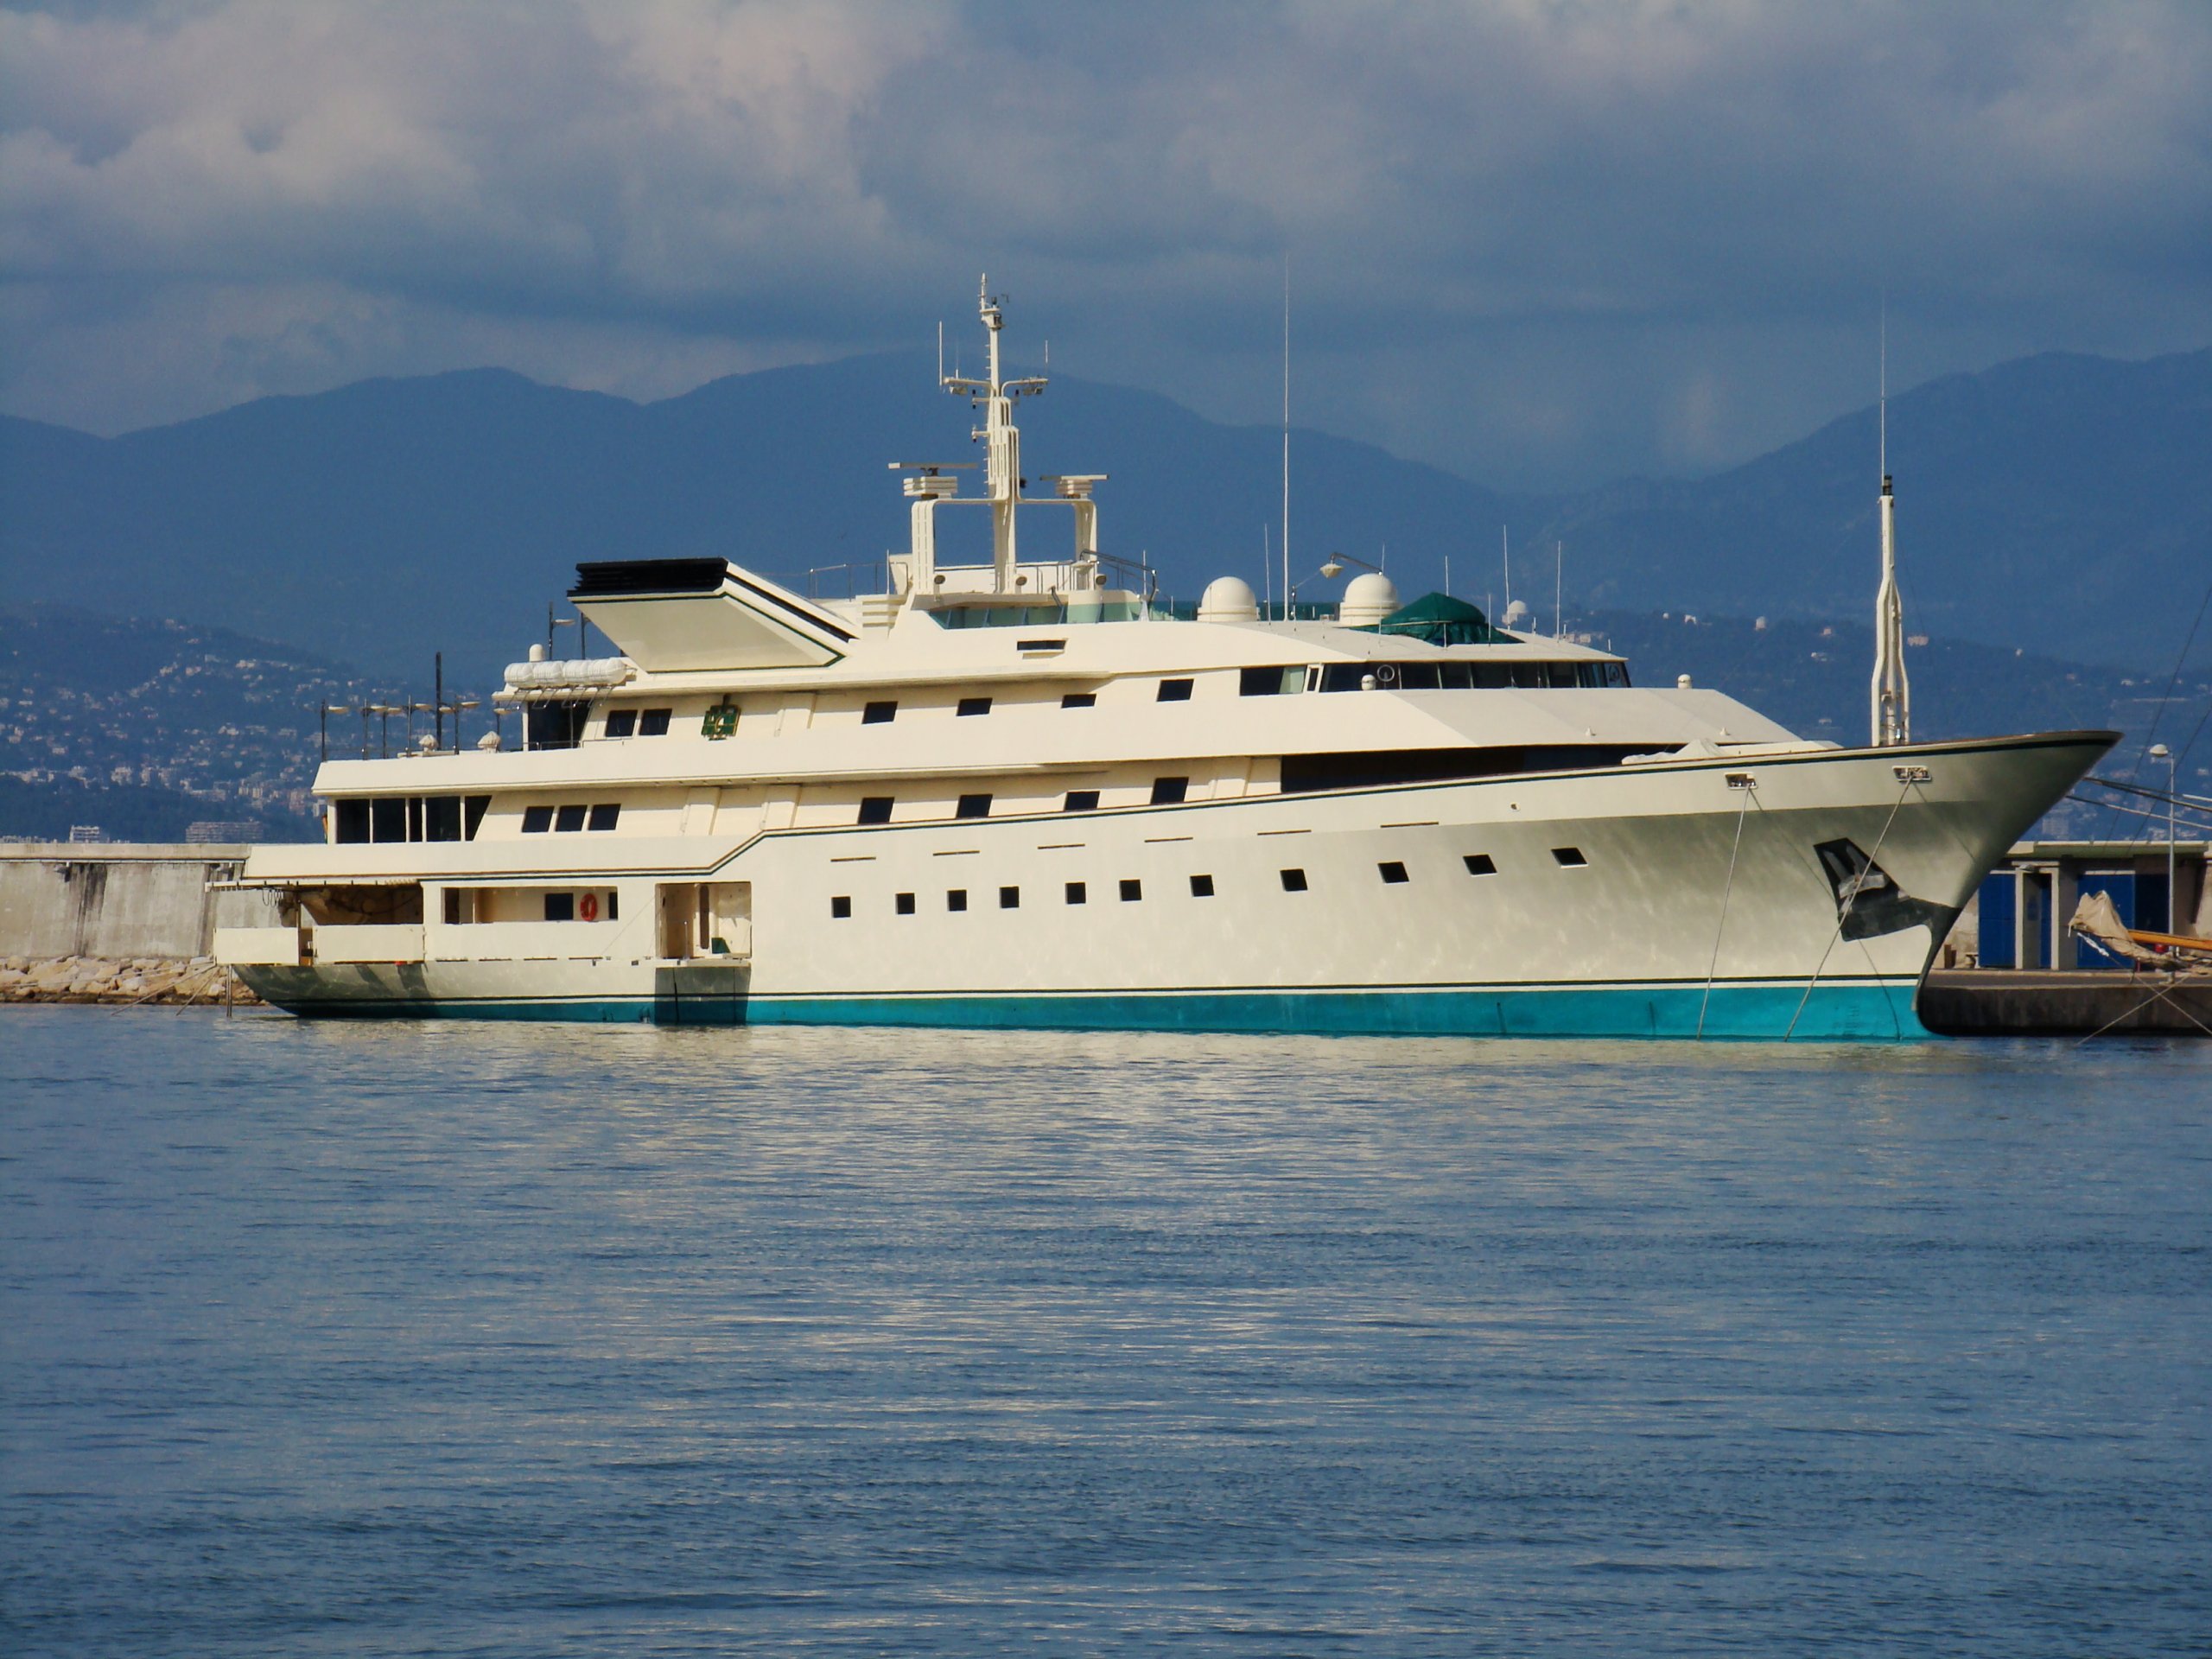 Inside KINGDOM 5KR Yacht • Benetti • 1980 • Value $90M • Owner Prince Al Waleed bin Talal